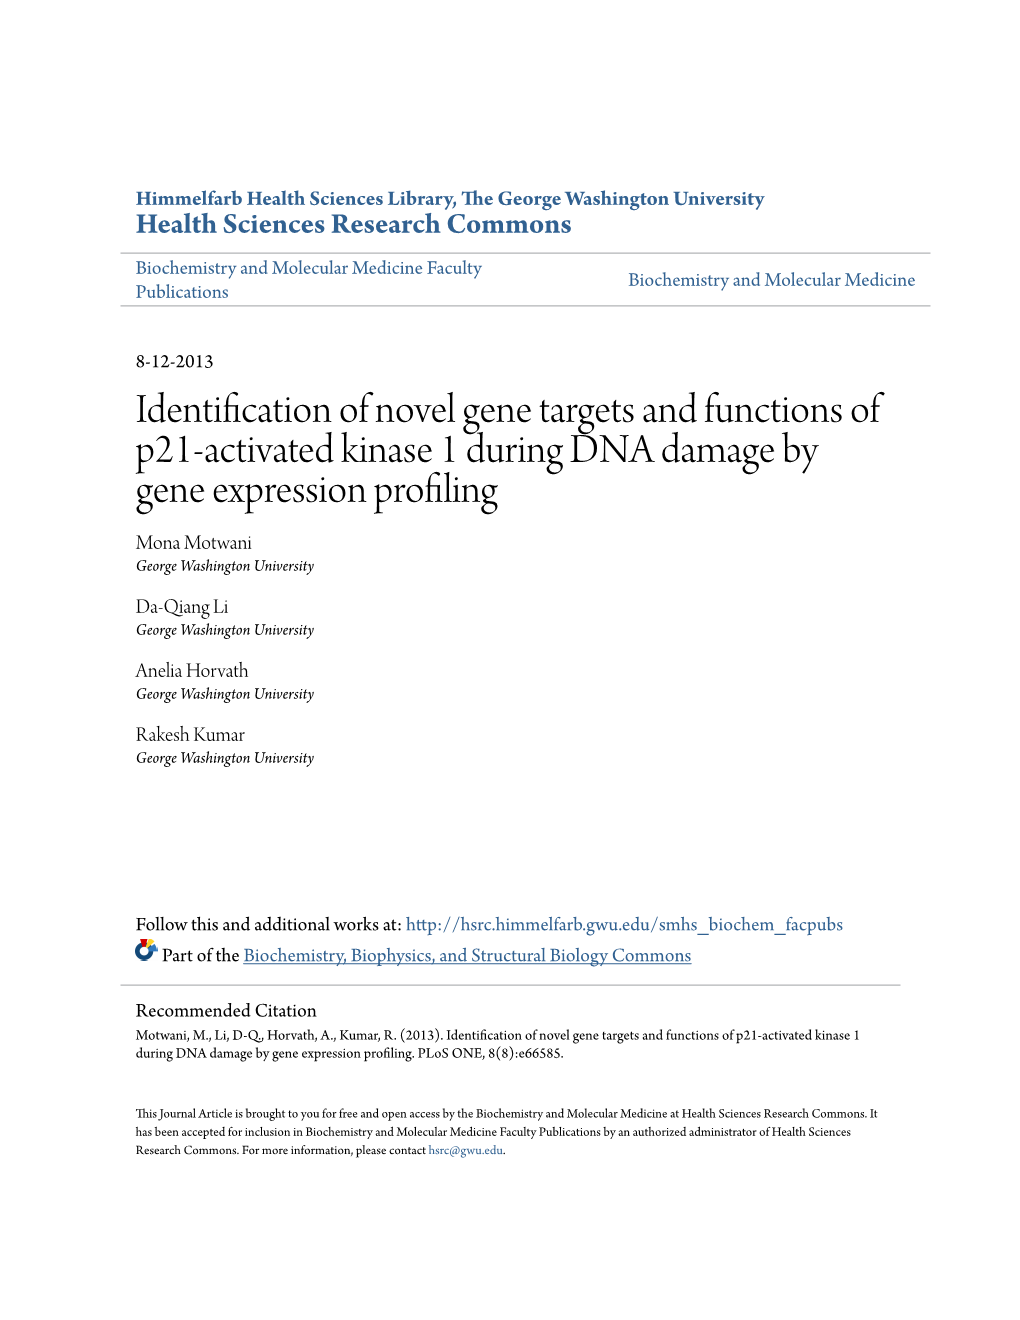 Identification of Novel Gene Targets and Functions of P21-Activated Kinase 1 During DNA Damage by Gene Expression Profiling Mona Motwani George Washington University